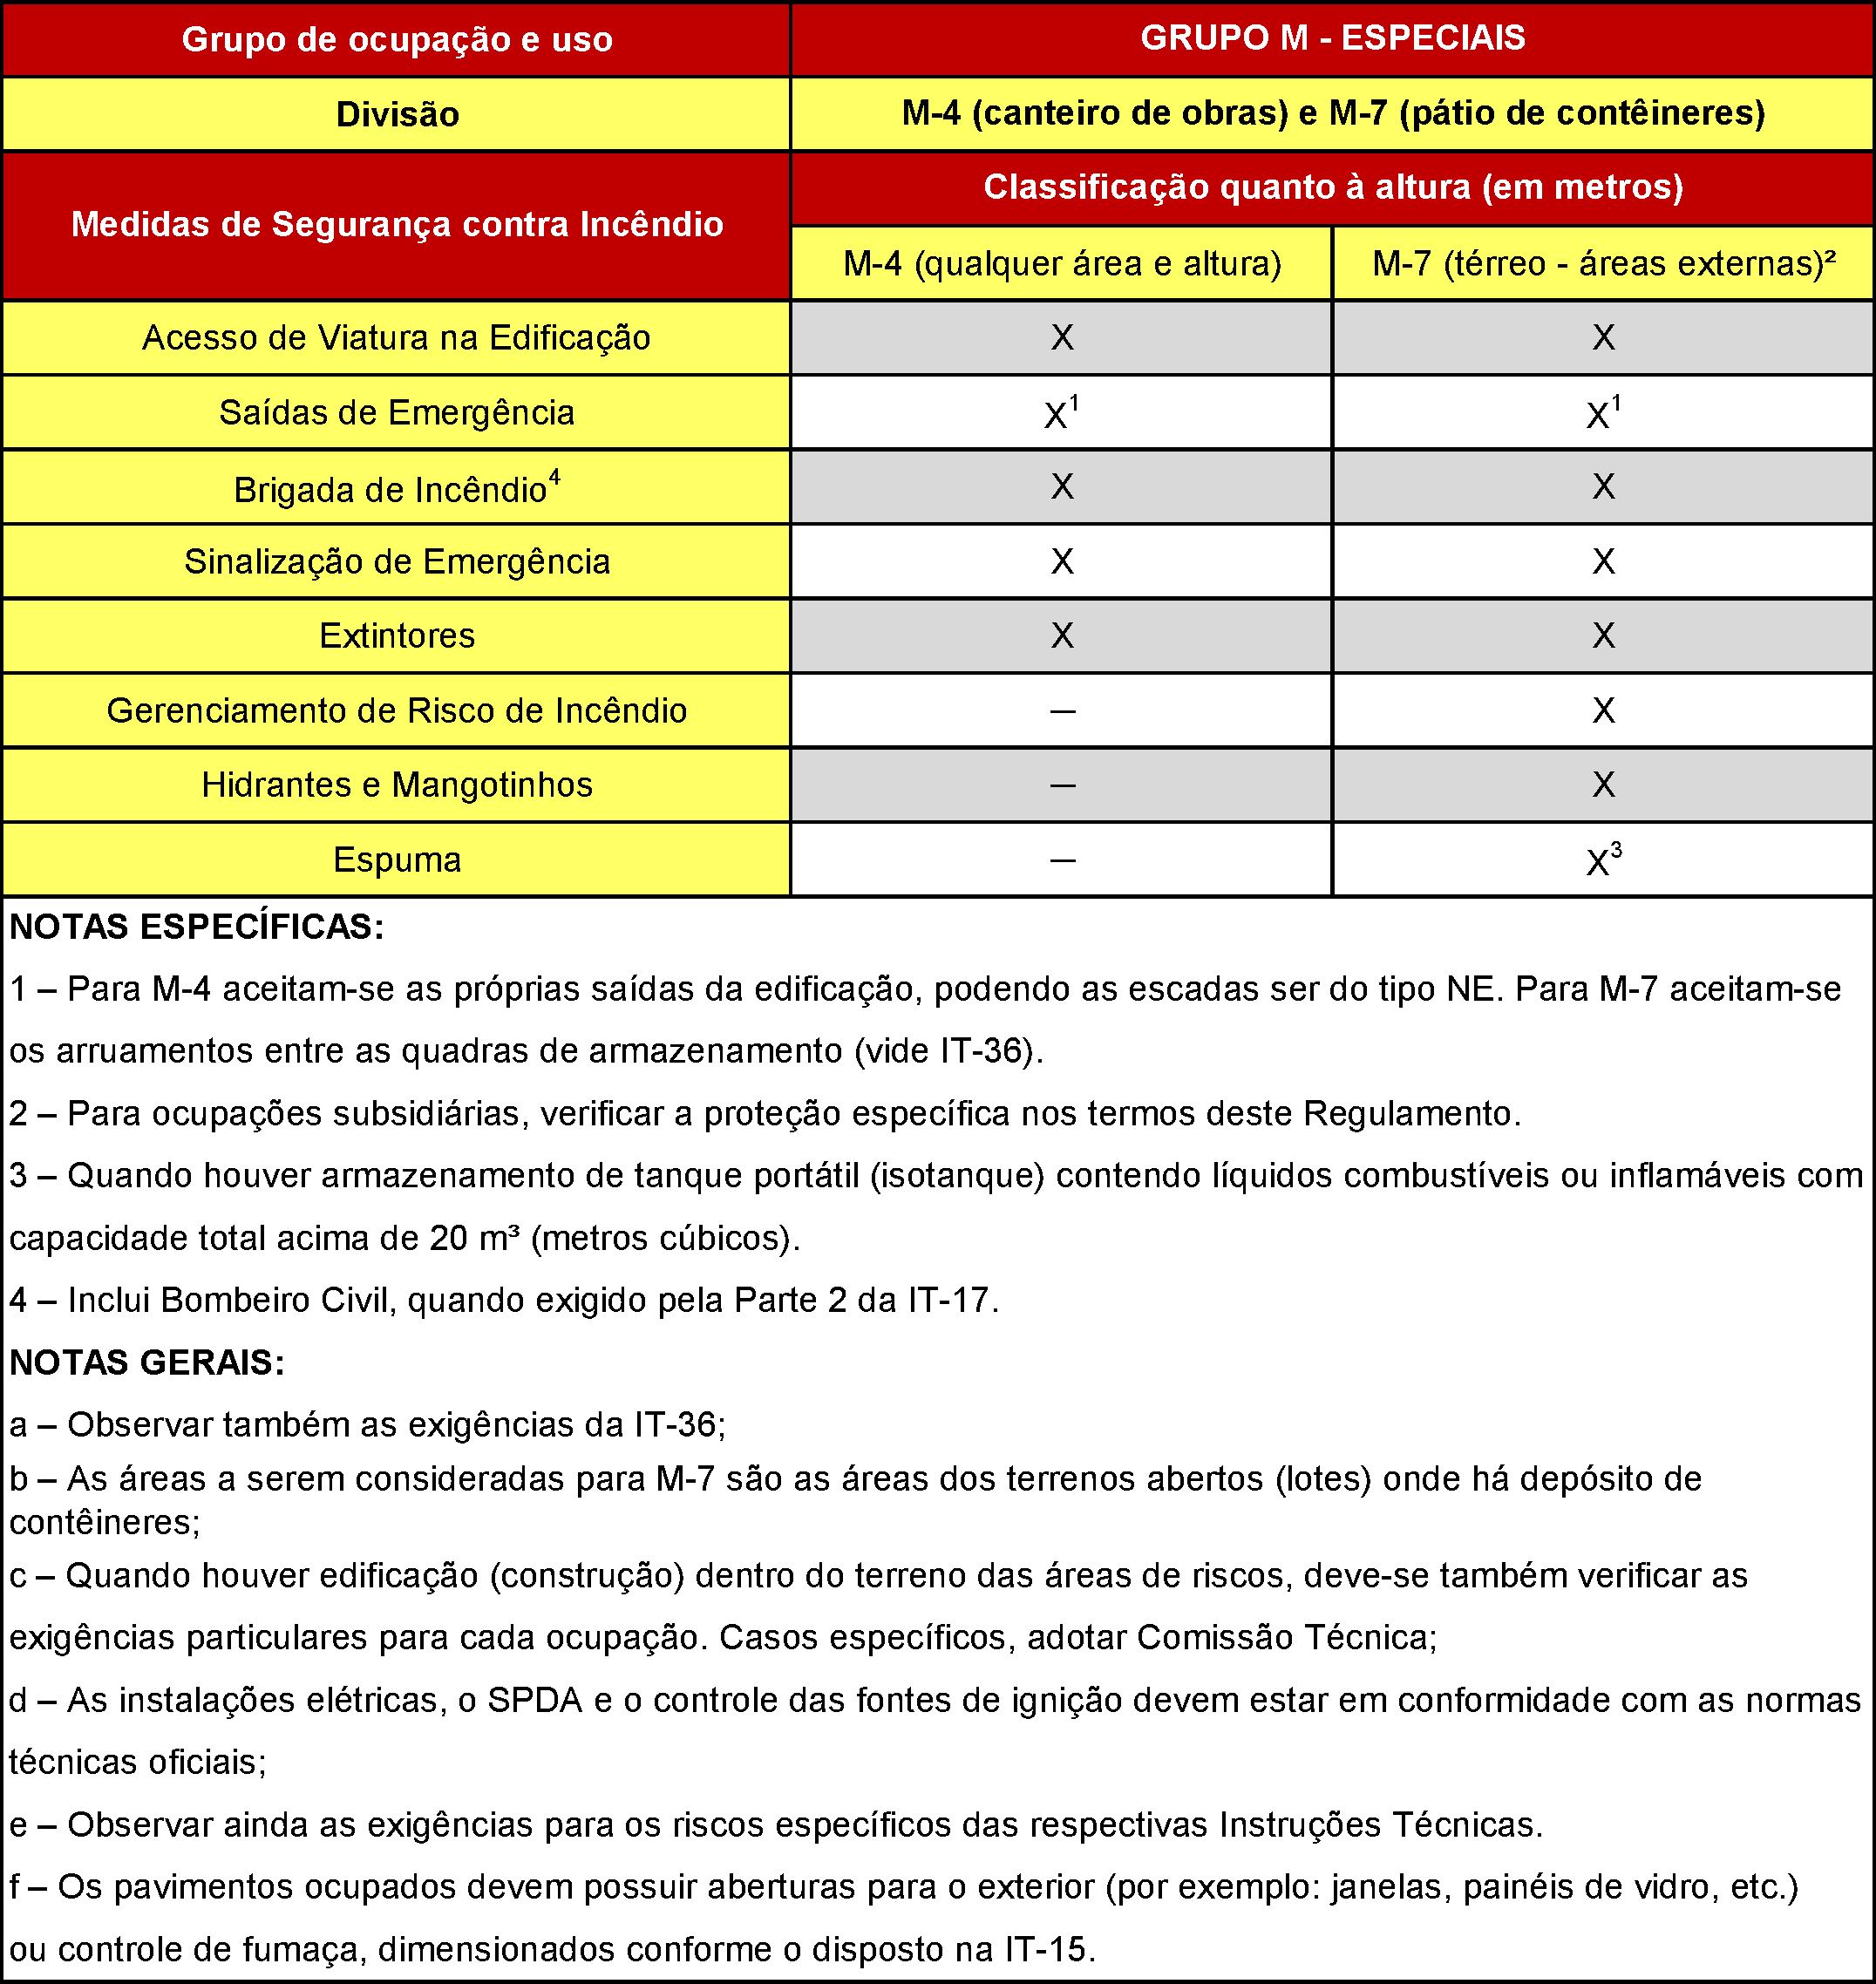 TABELA 6M.4: EDIFICAÇÕES E ÁREAS DE RISCO DE DIVISÃO M-4 E M-7